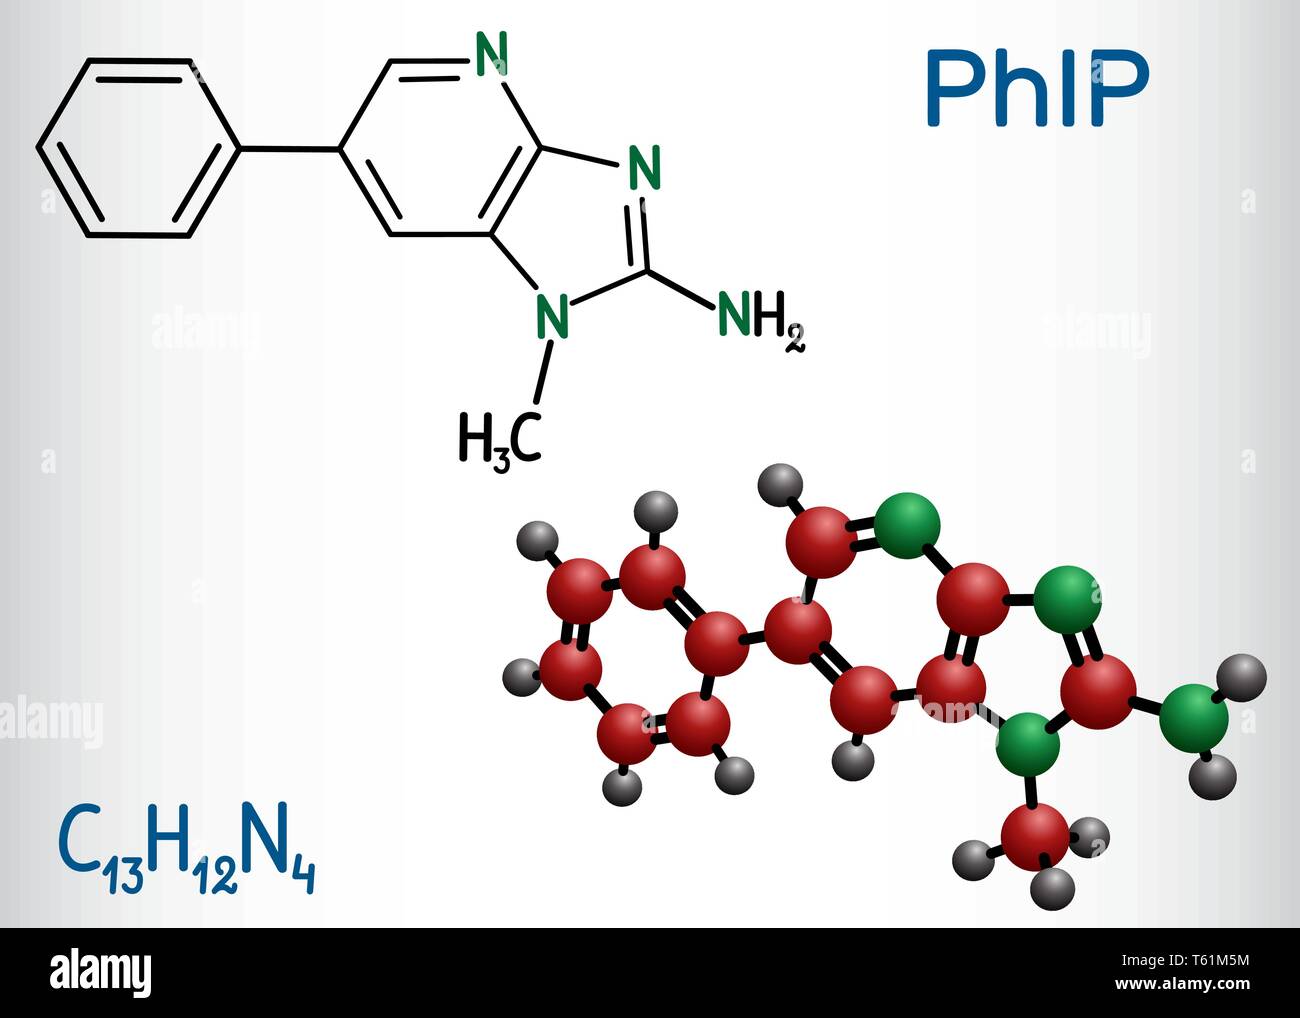 PhIP ( 2-amino-1-méthyl-6-phenylimidazo(4,5-b)pyridine) molécule. C'est un des amines hétérocycliques (HCA) de viande cuite. Formule chimique structurels Illustration de Vecteur